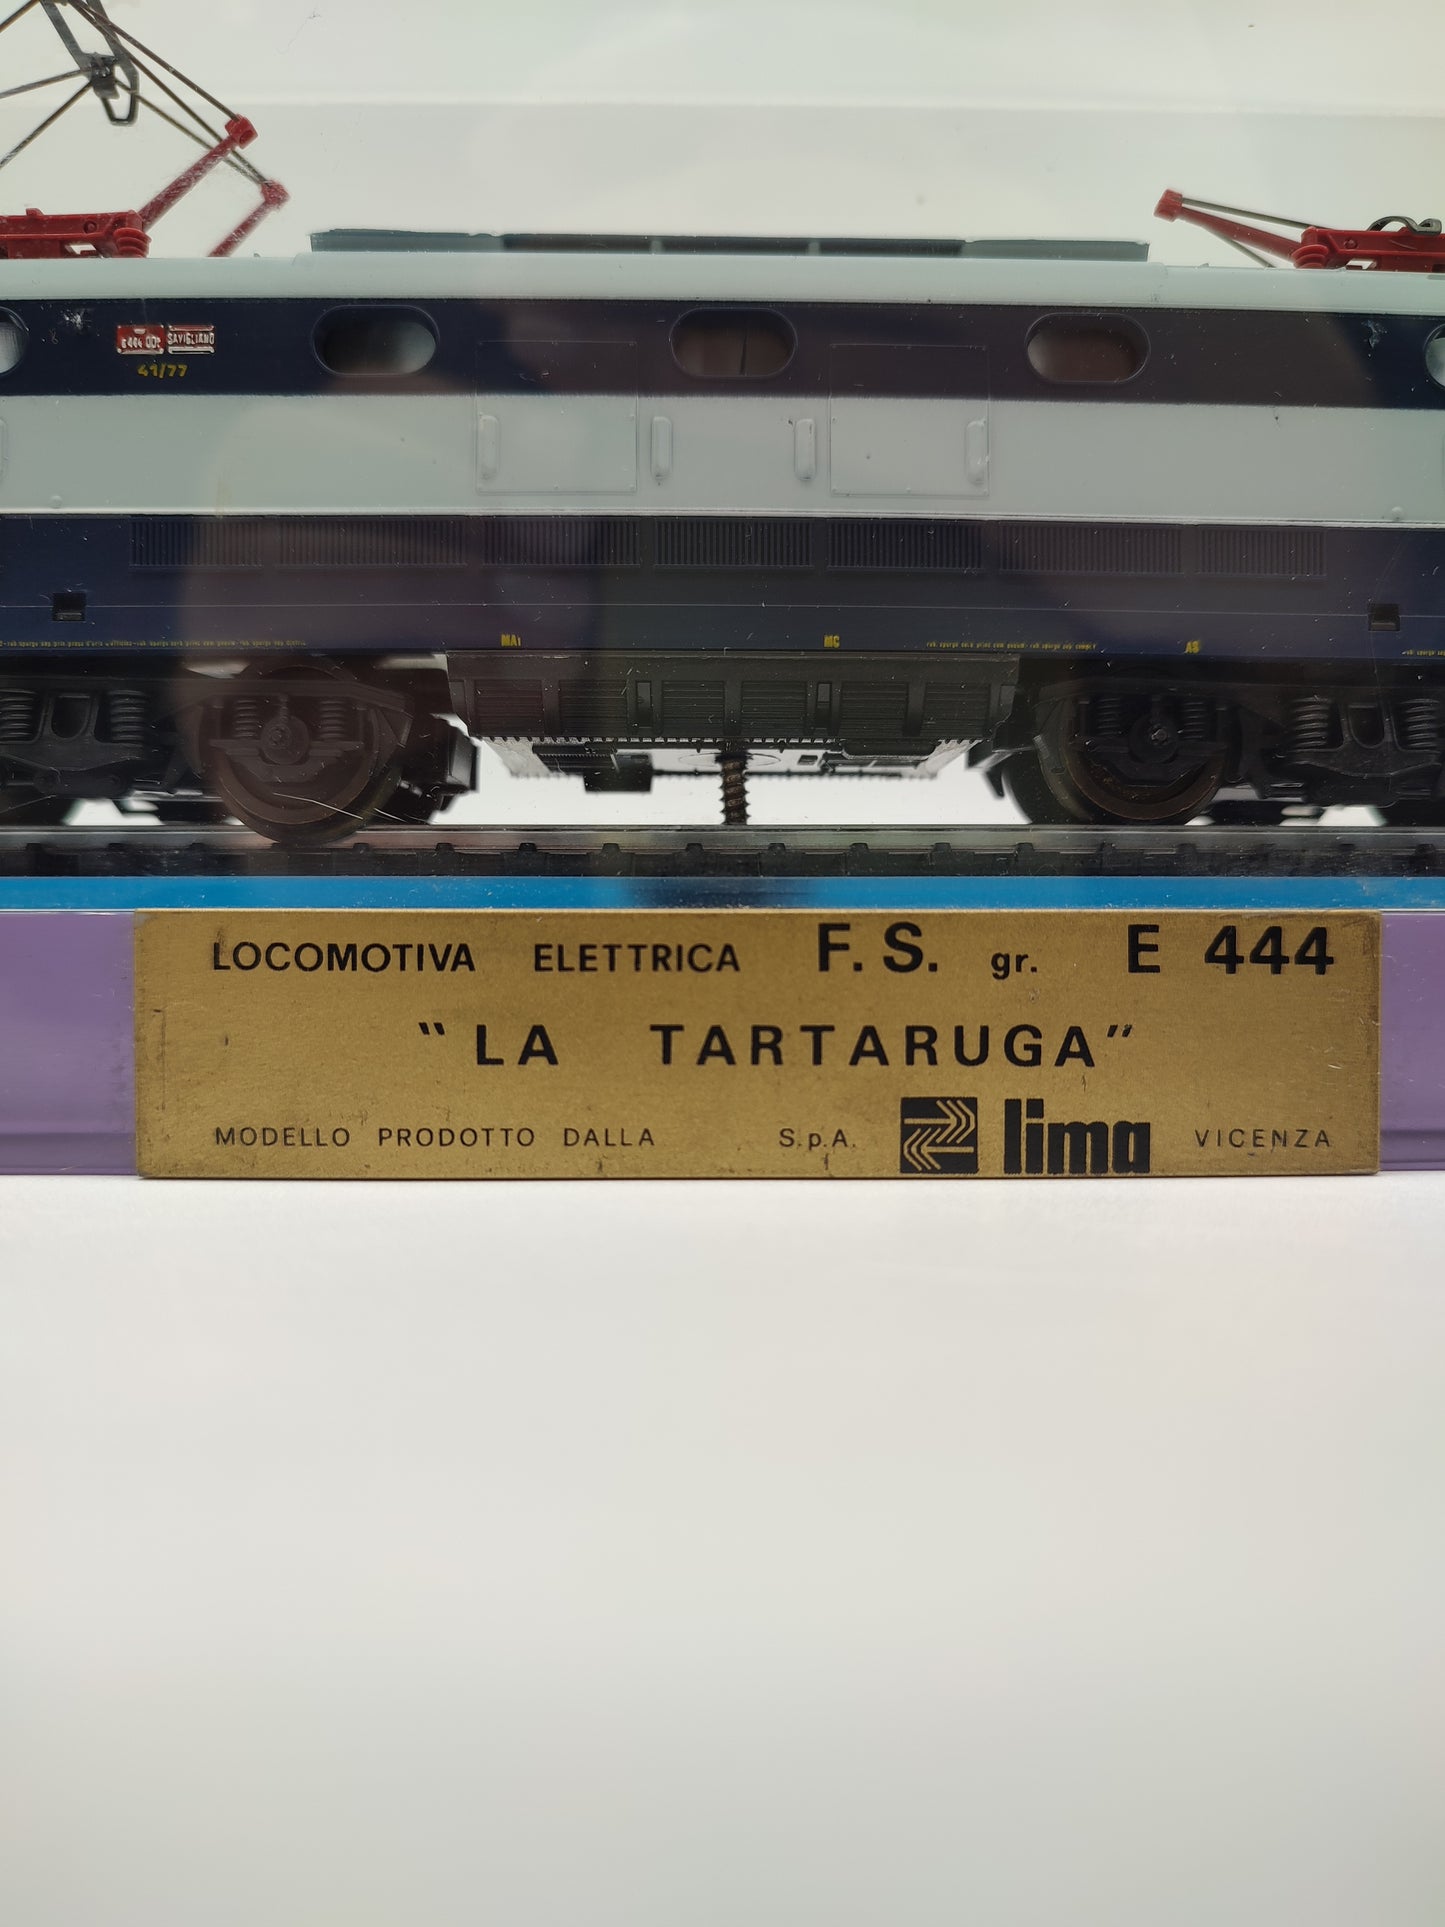 68426 Modello locomotiva elettrica F.S. E444 La Tartaruga, Lima